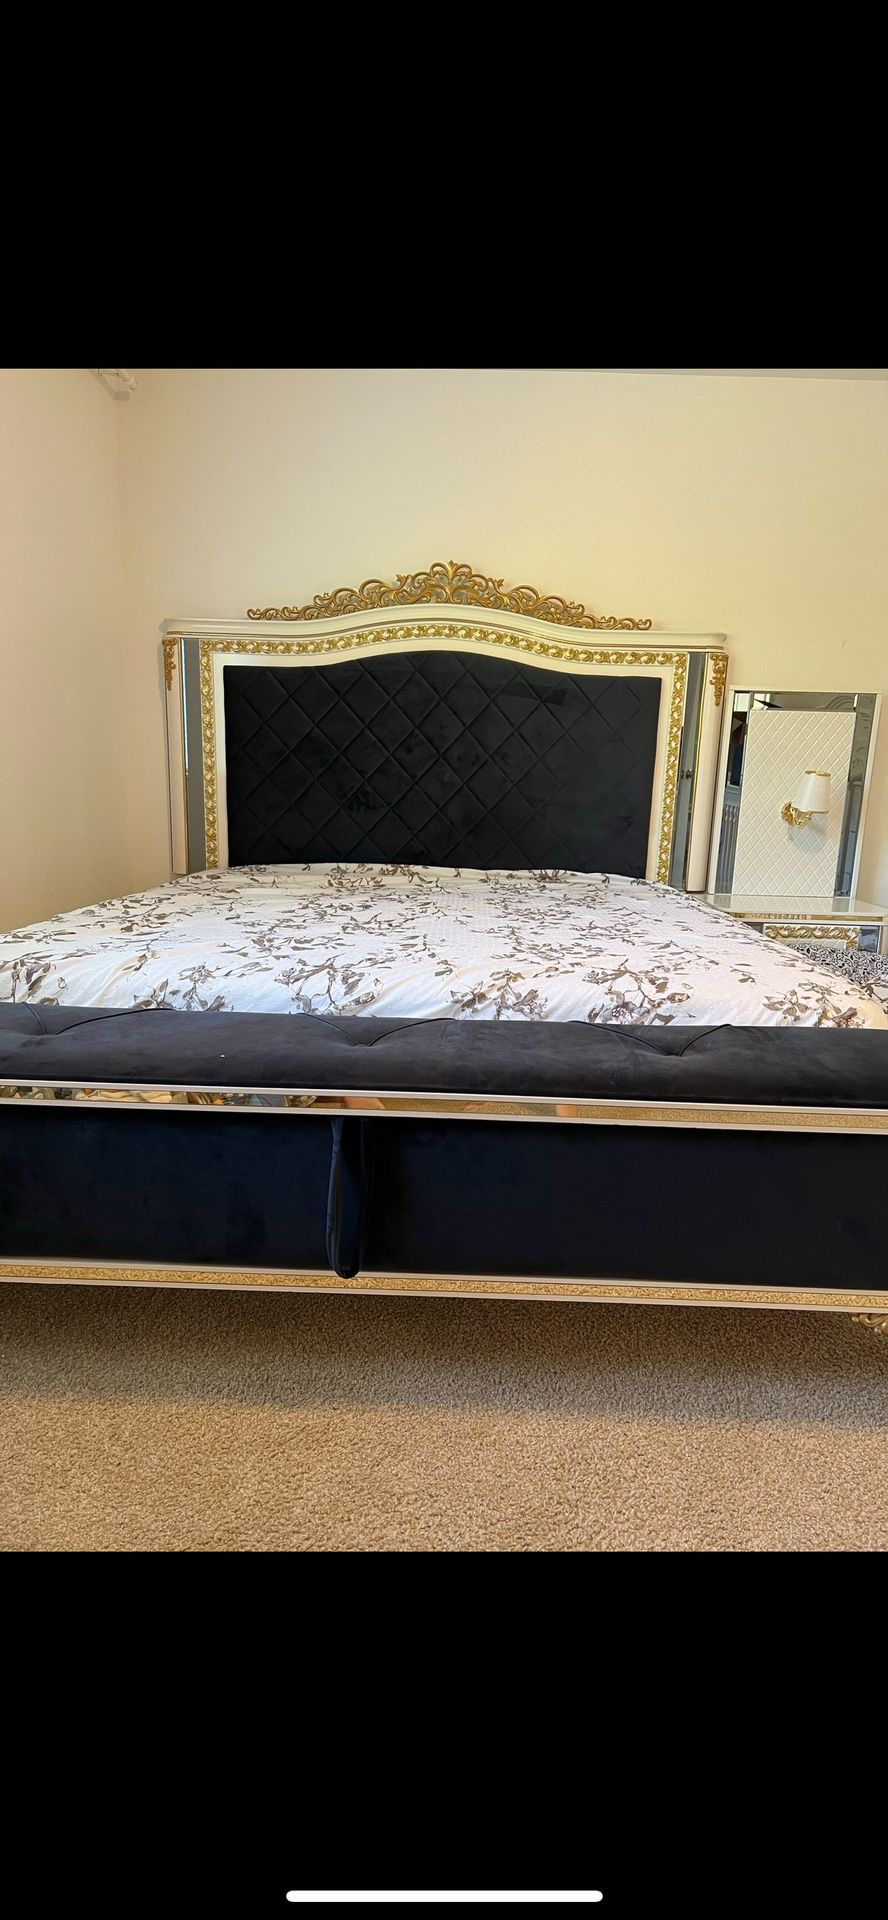 Elegant King Size Bed Set